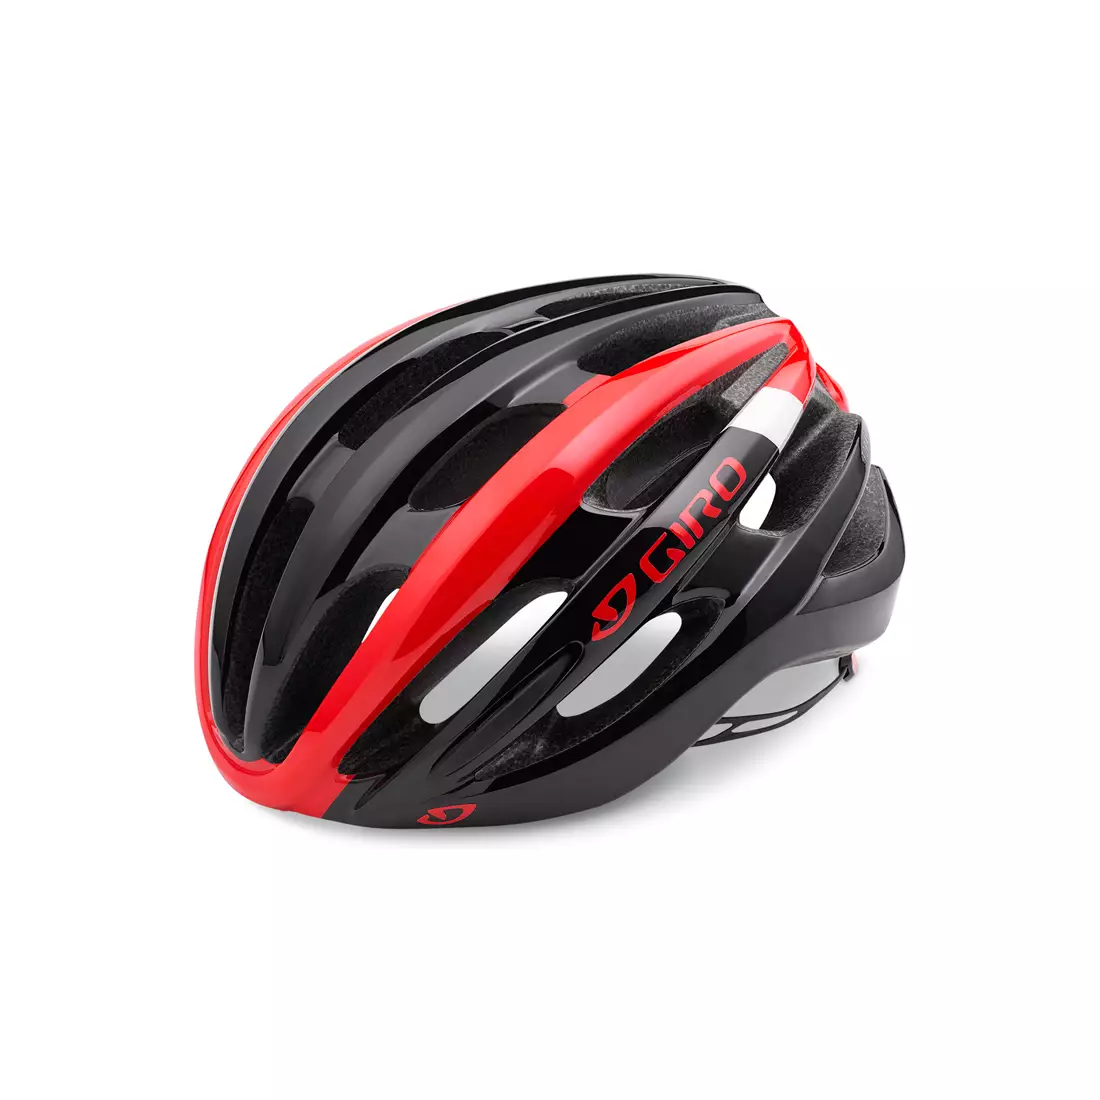 GIRO FORAY - černo-červená cyklistická přilba